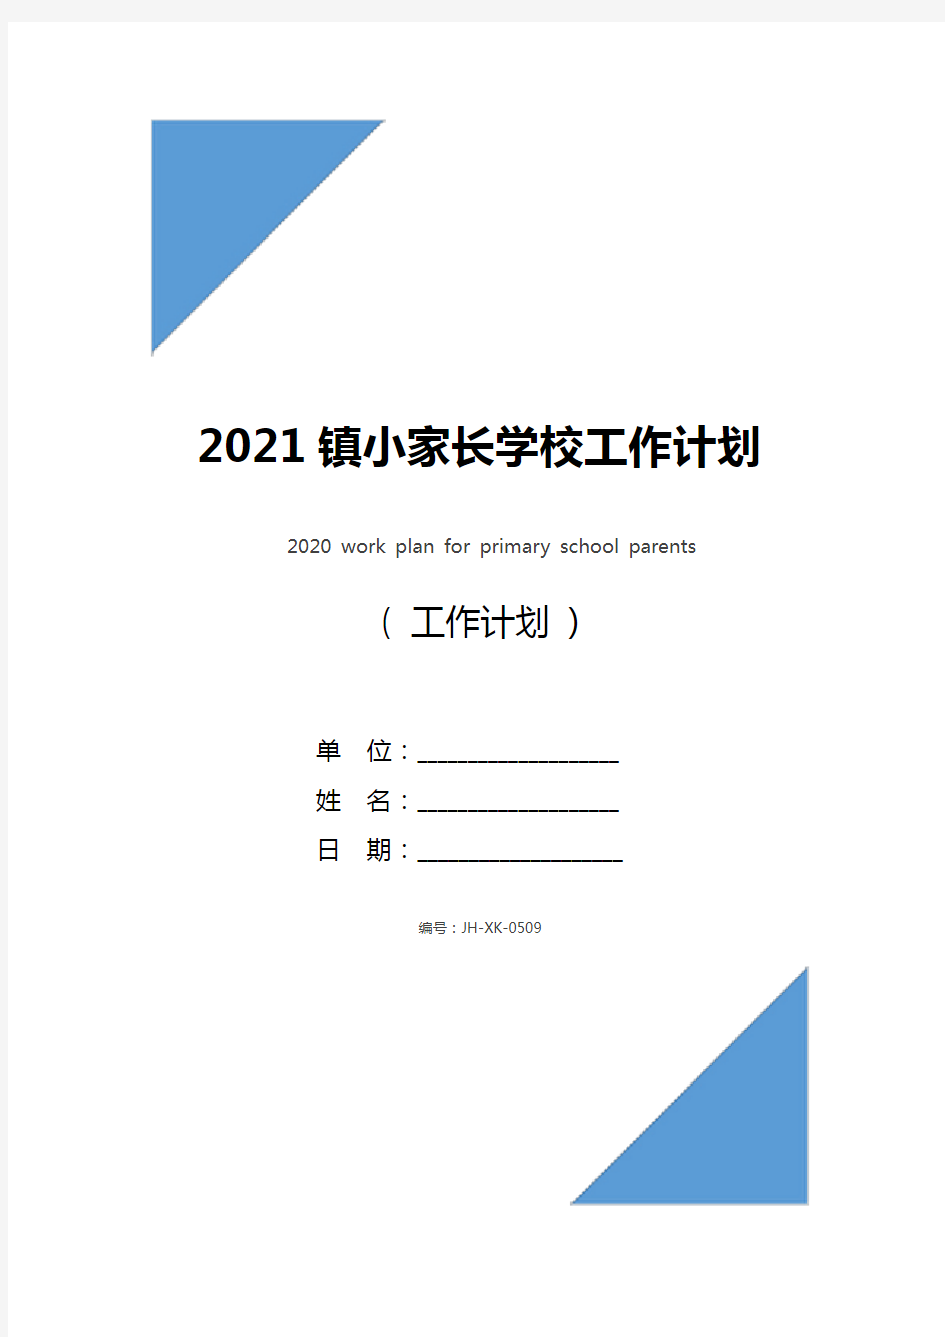 2021镇小家长学校工作计划(通用版)